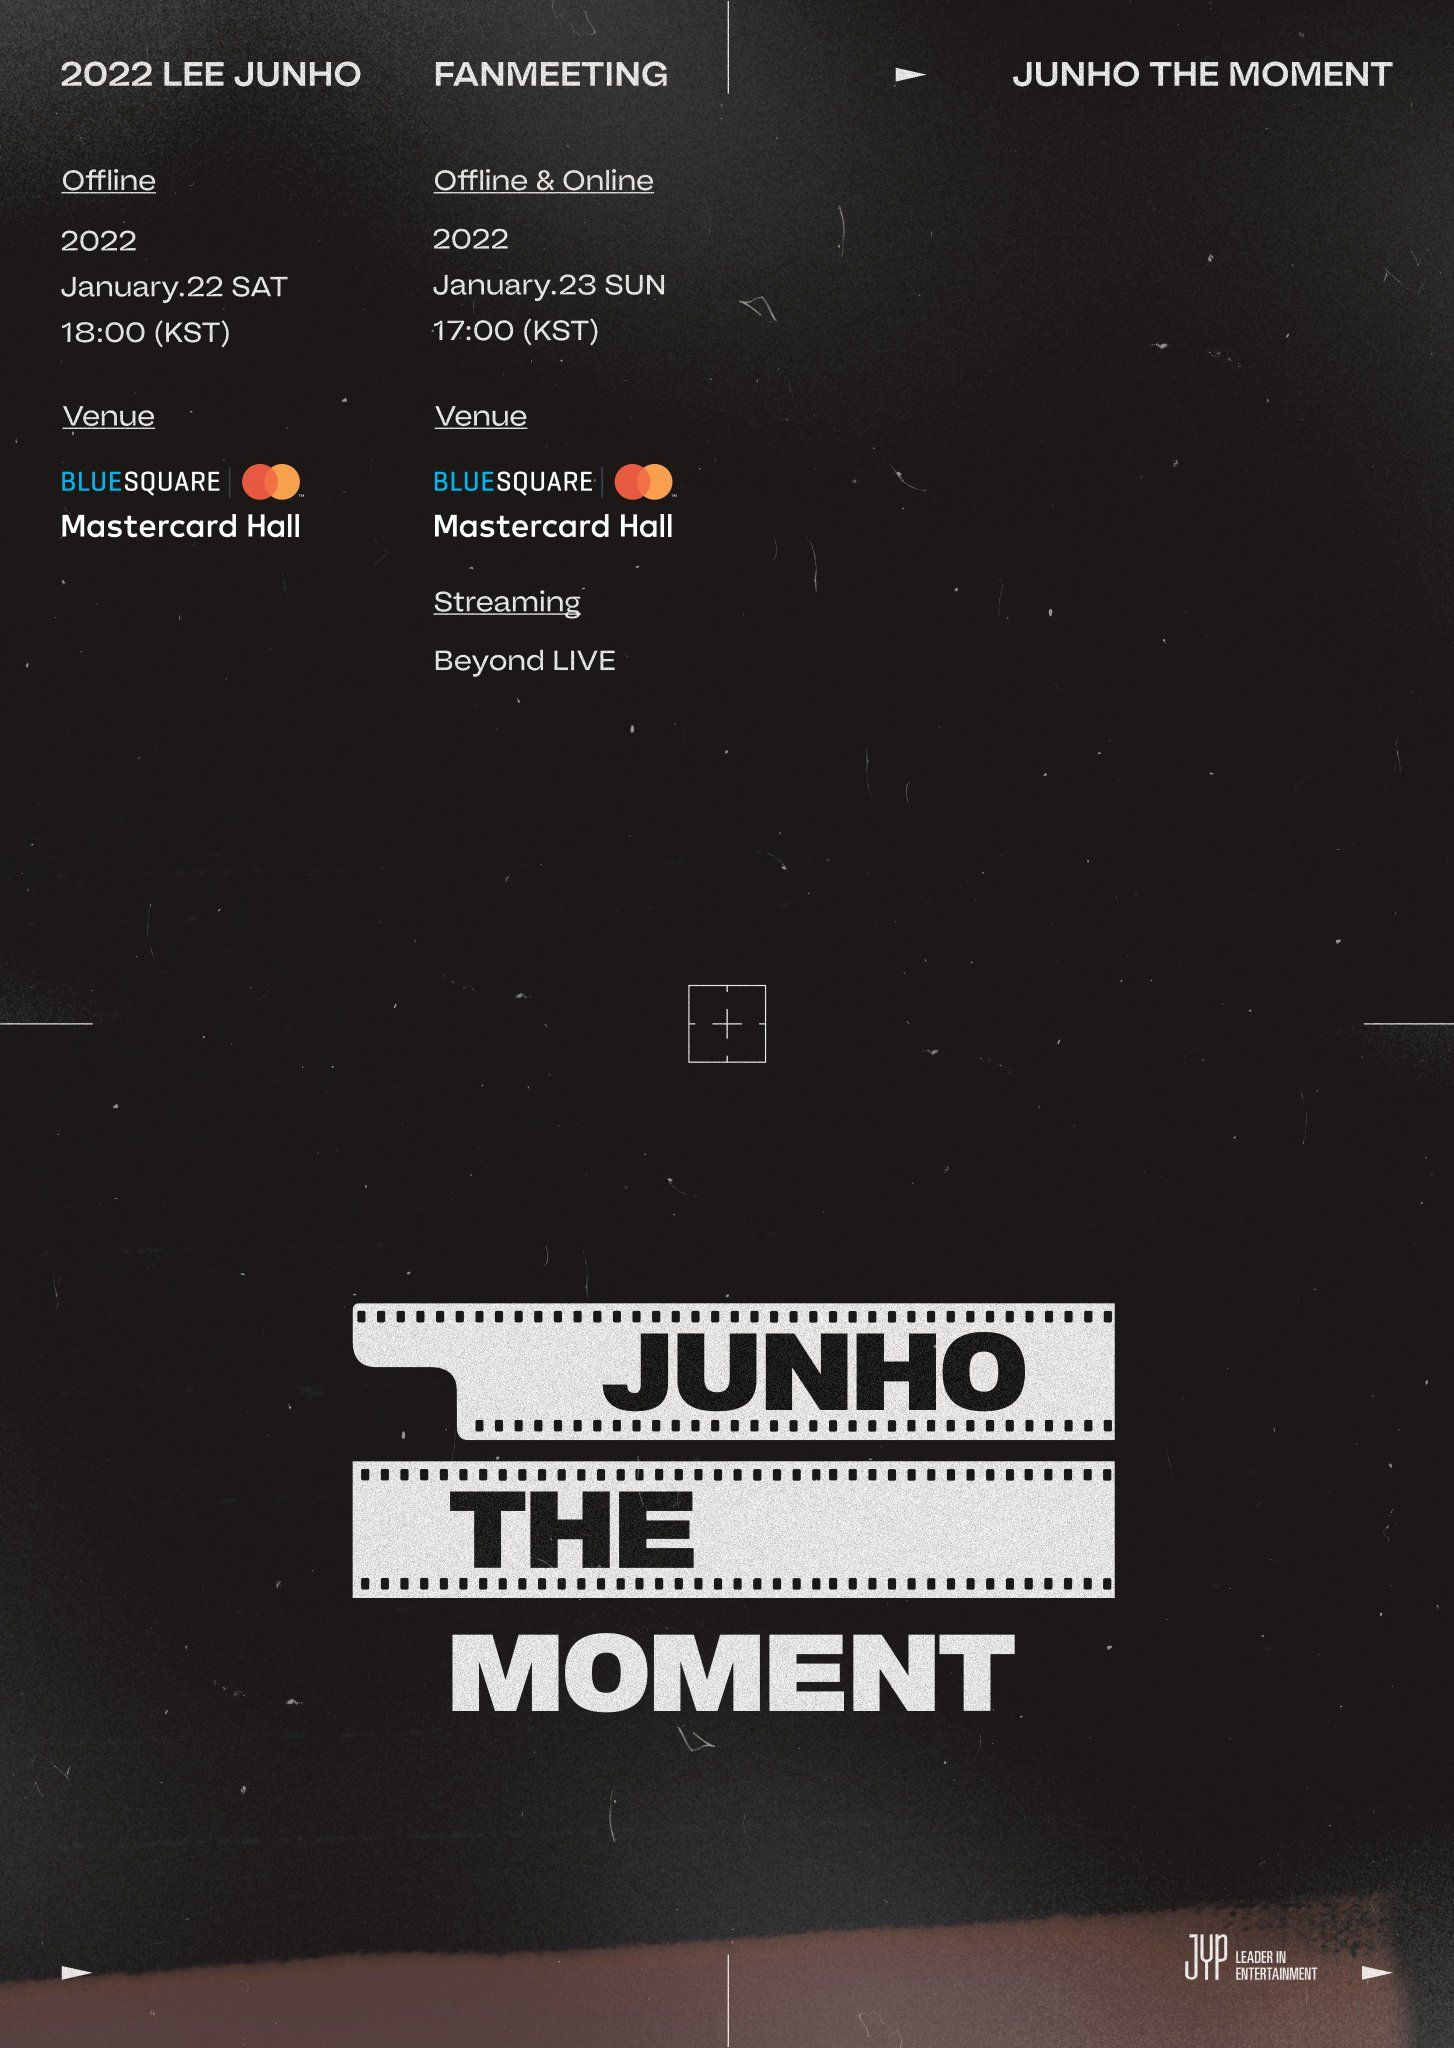 Lee Junho 2PM Umumkan Akan Menggelar Fan Meeting Bertajuk 'Junho The Moment', Catat Tanggalnya! 